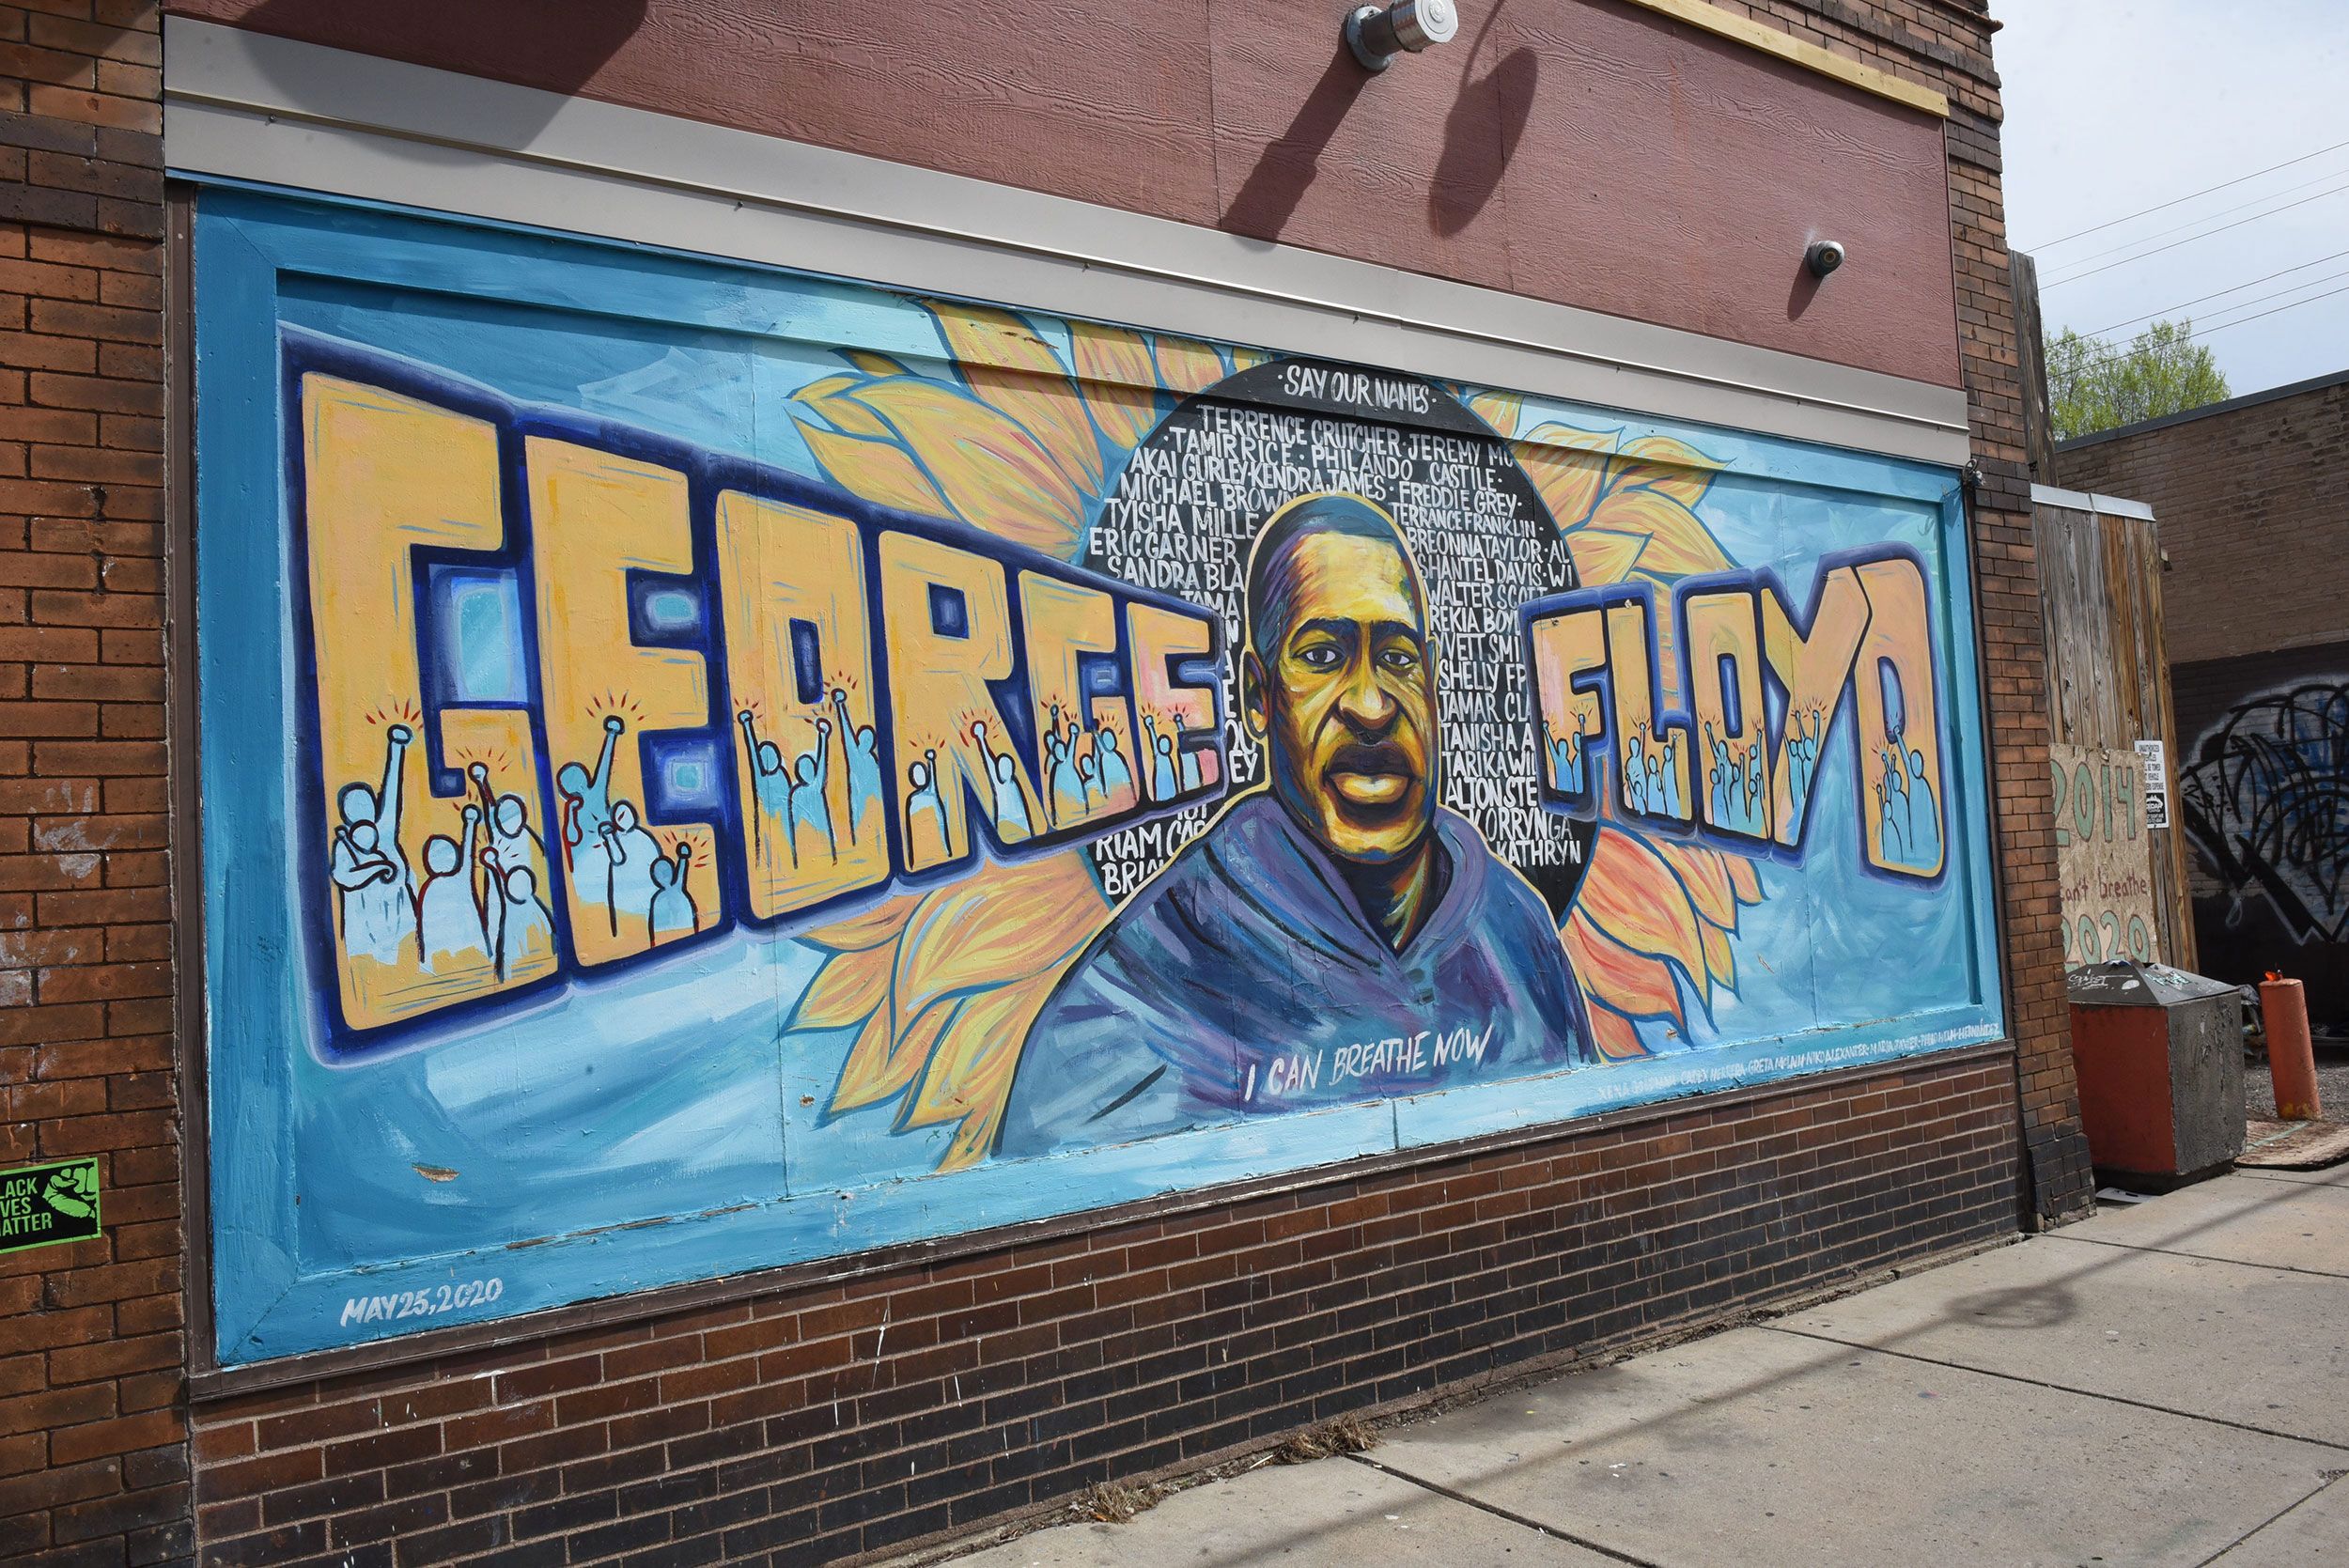 En mayo de 2020, Floyd fue asesinado por el oficial de policía de Minneapolis, Derek Chauvin, justo afuera de esta tienda y provocó protestas a nivel nacional por la brutalidad policial.